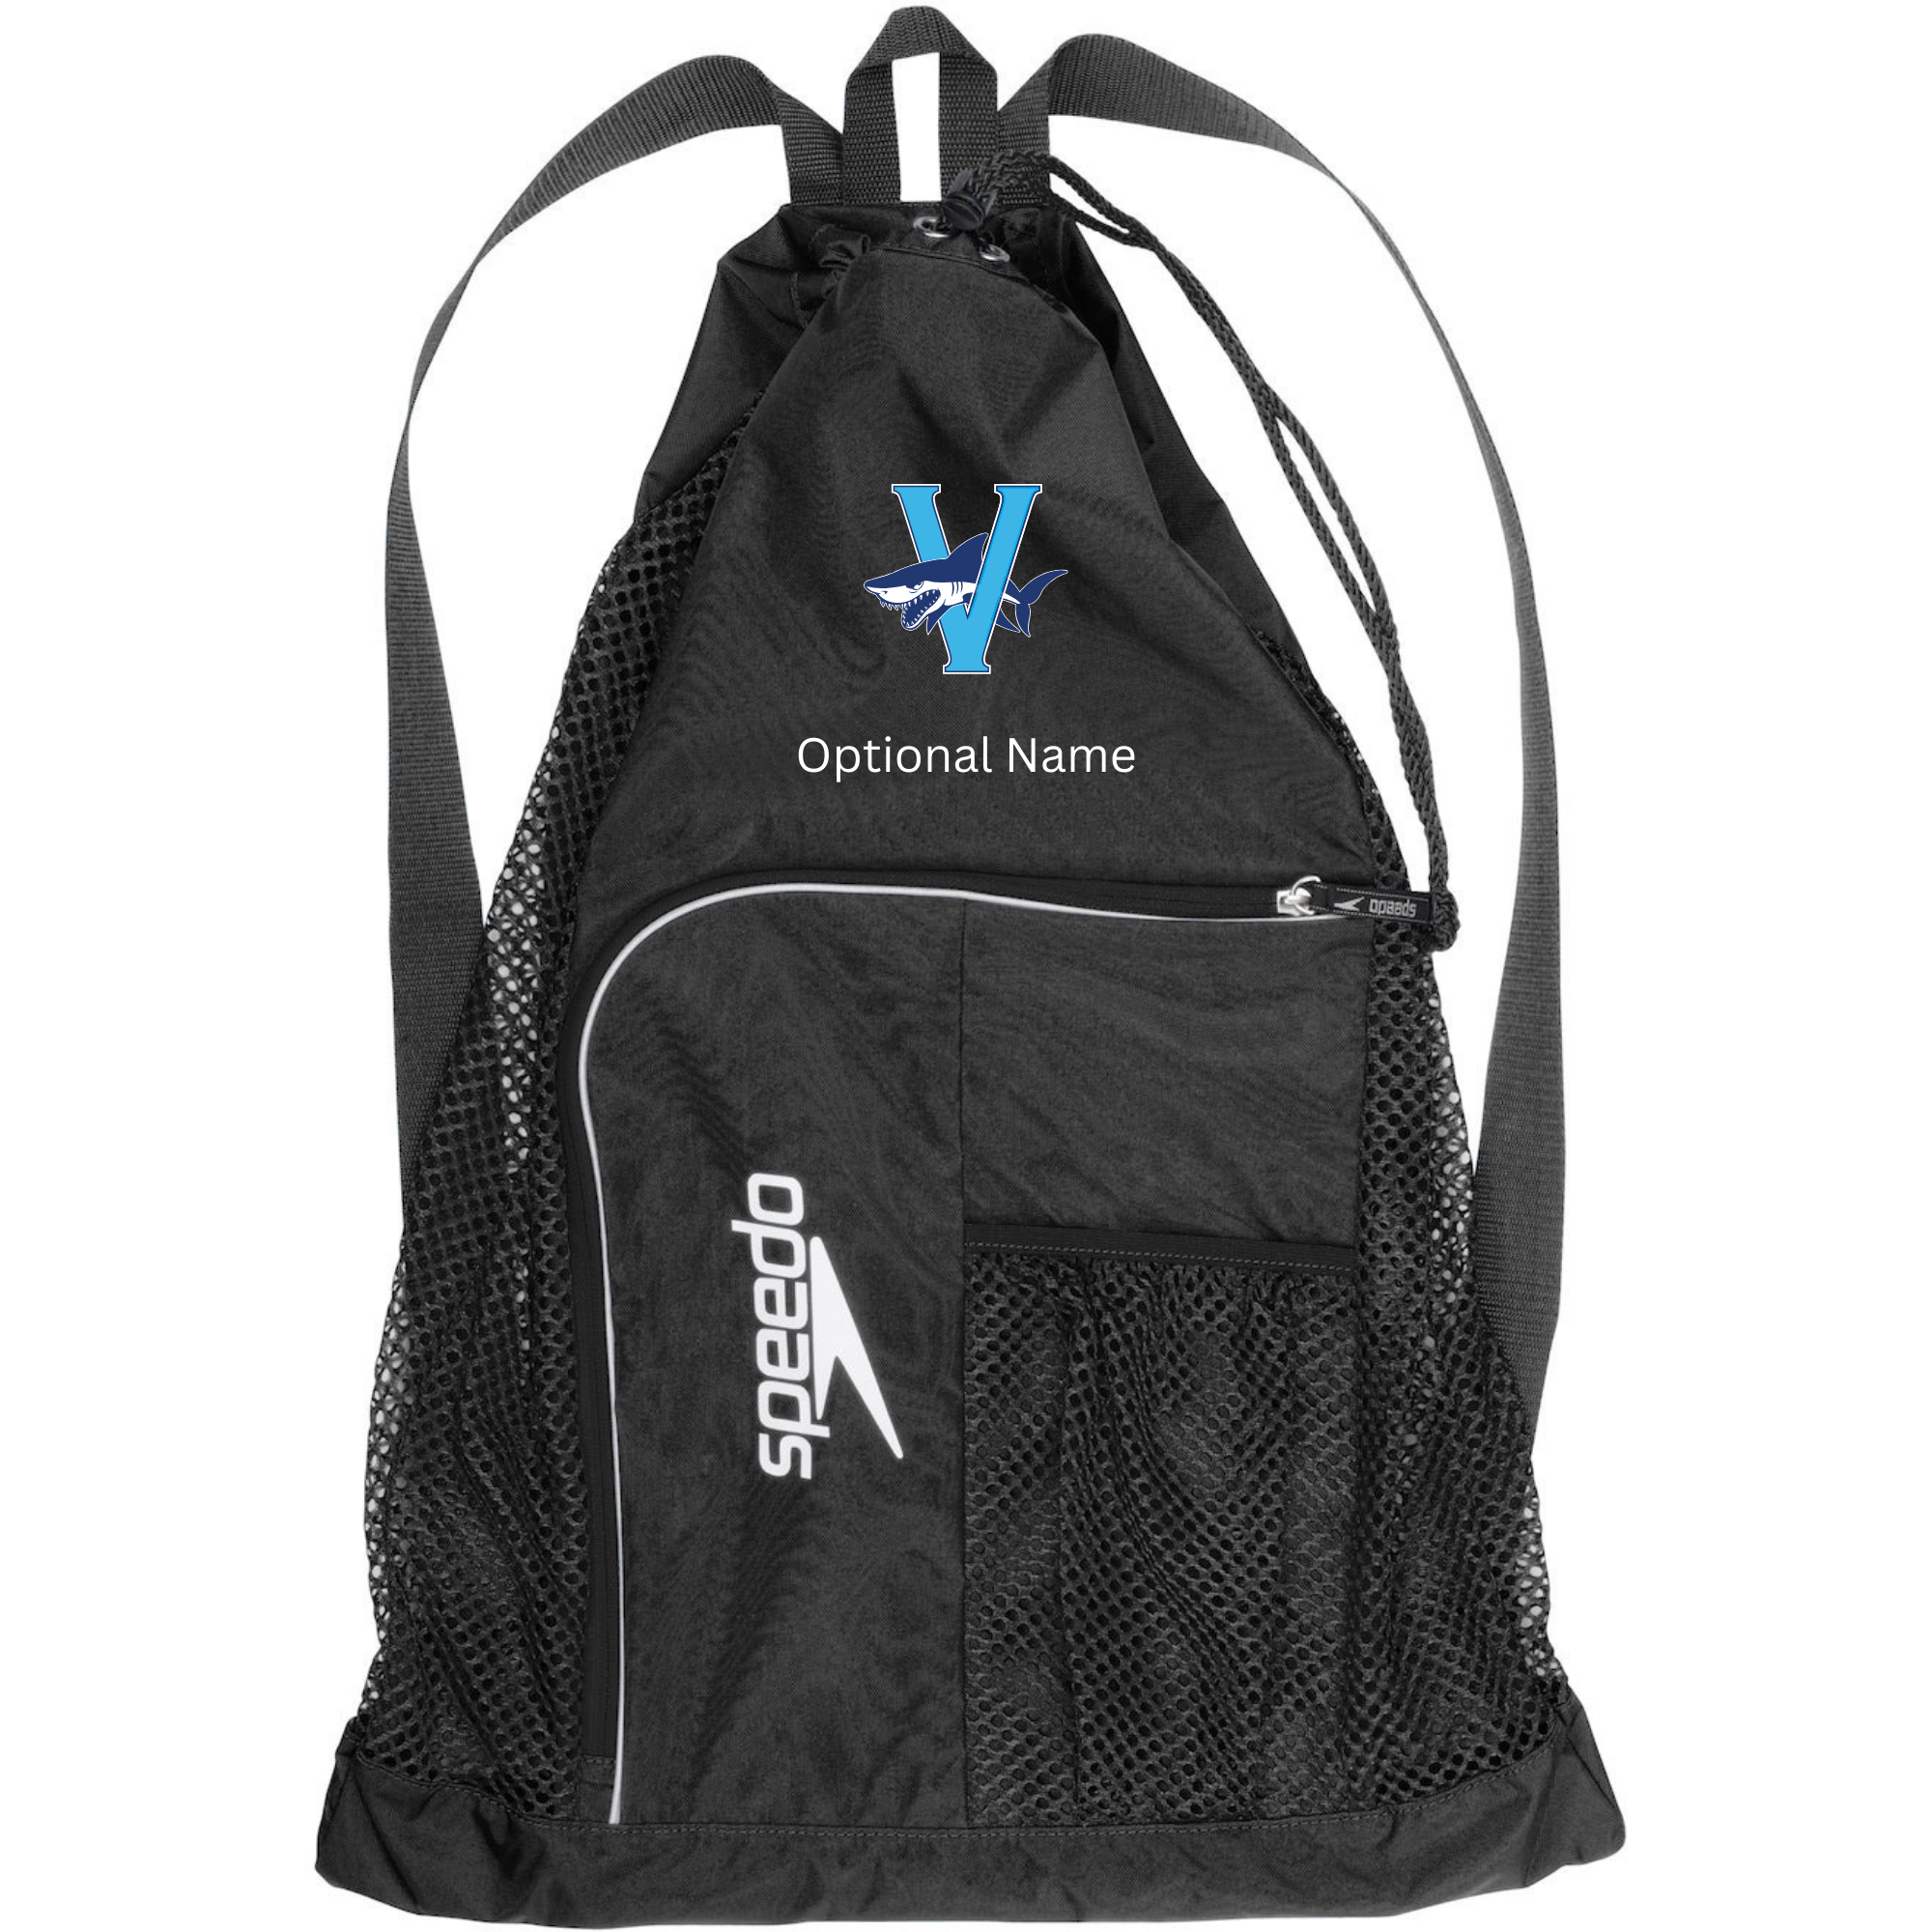 Speedo Deluxe Ventilator Backpack (Customized) - Venetian